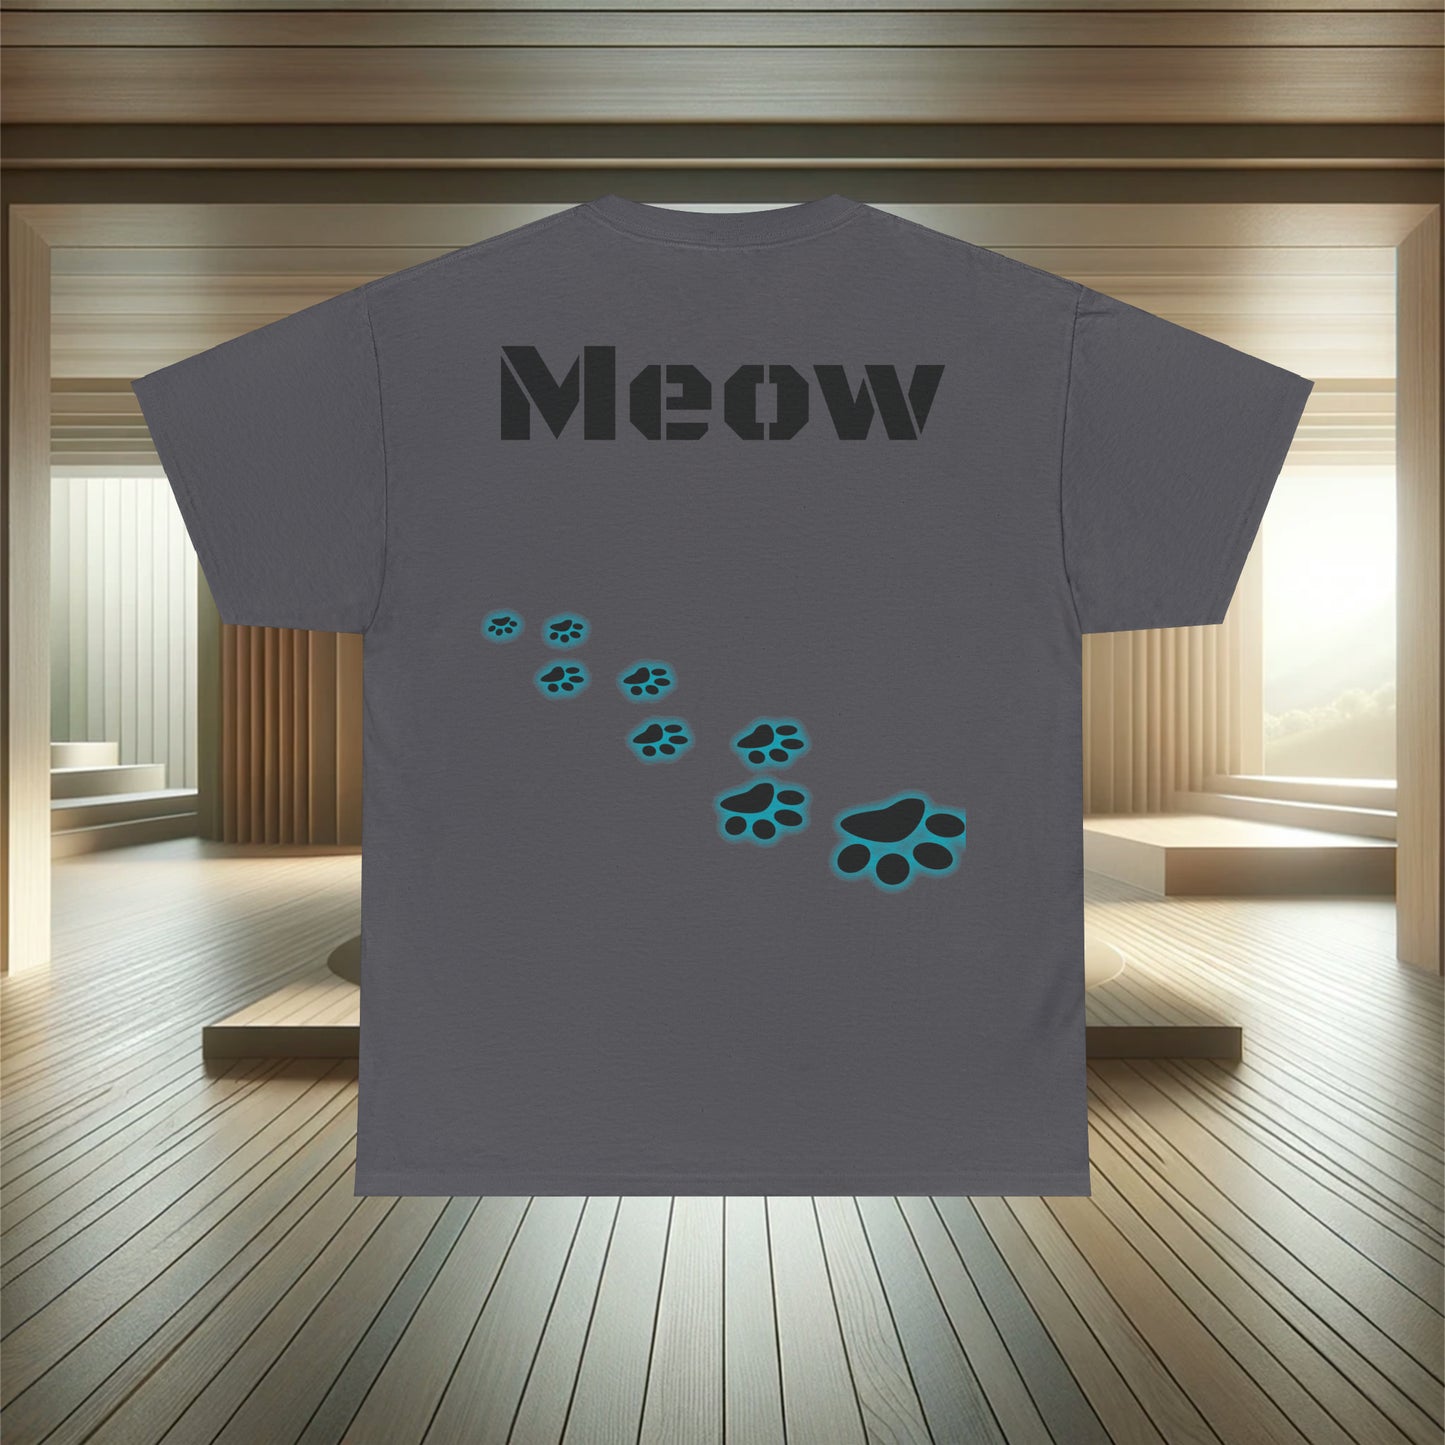 Got CatNip? cat lover gift, cat lover, Cat Lover Gift, cat